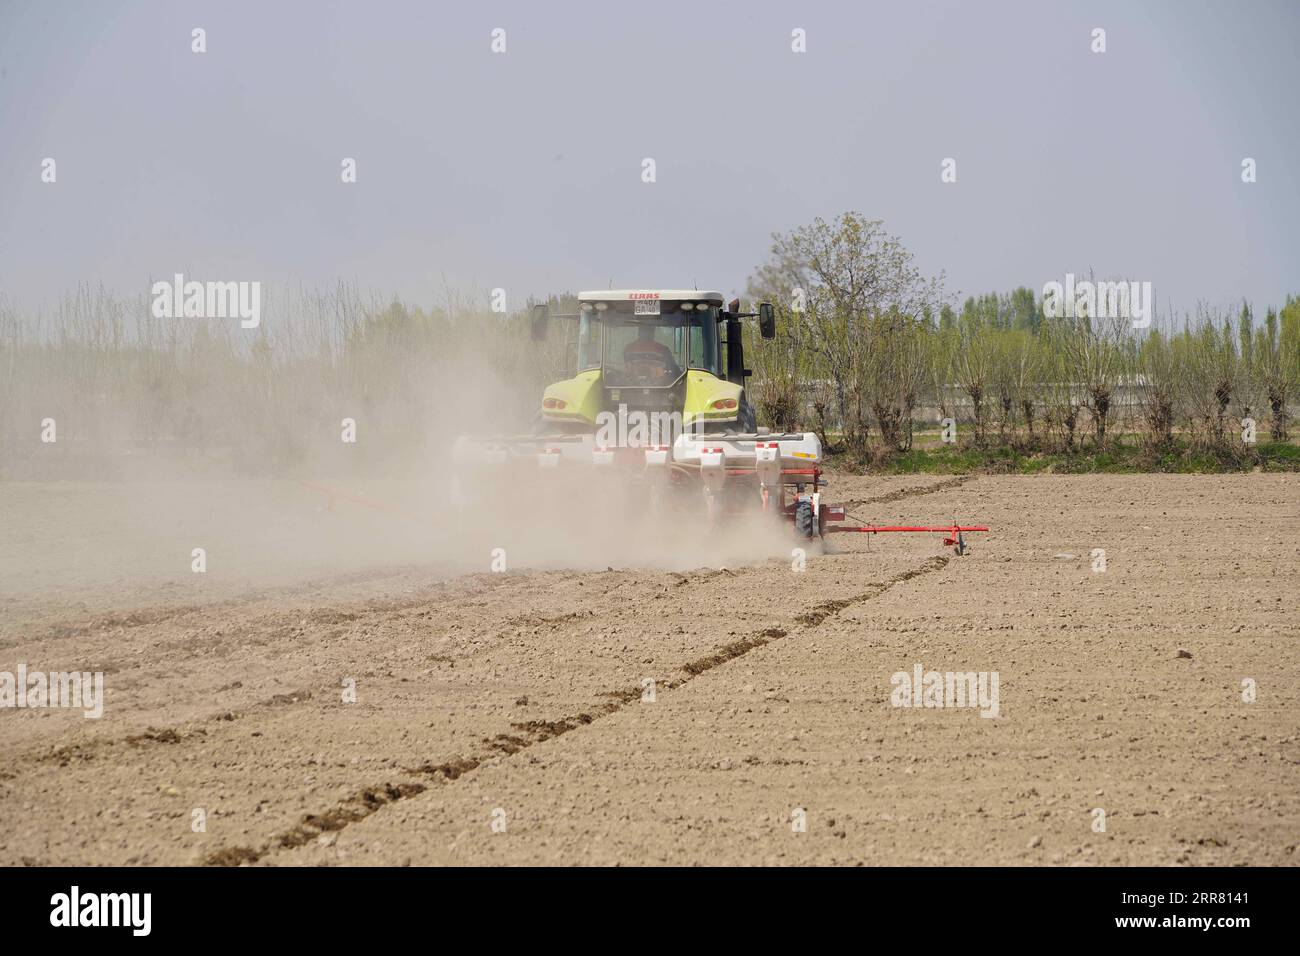 210411 -- FERGANA, 11 aprile 2021 -- Un tecnico alla guida di una seminatrice scava semi di cotone nella regione di Fergana, Uzbekistan, 9 aprile 2021. Foto di /Xinhua UZBEKISTAN-FERGANA-COTTON-FARMING ZafarxKhalilov PUBLICATIONxNOTxINxCHN Foto Stock